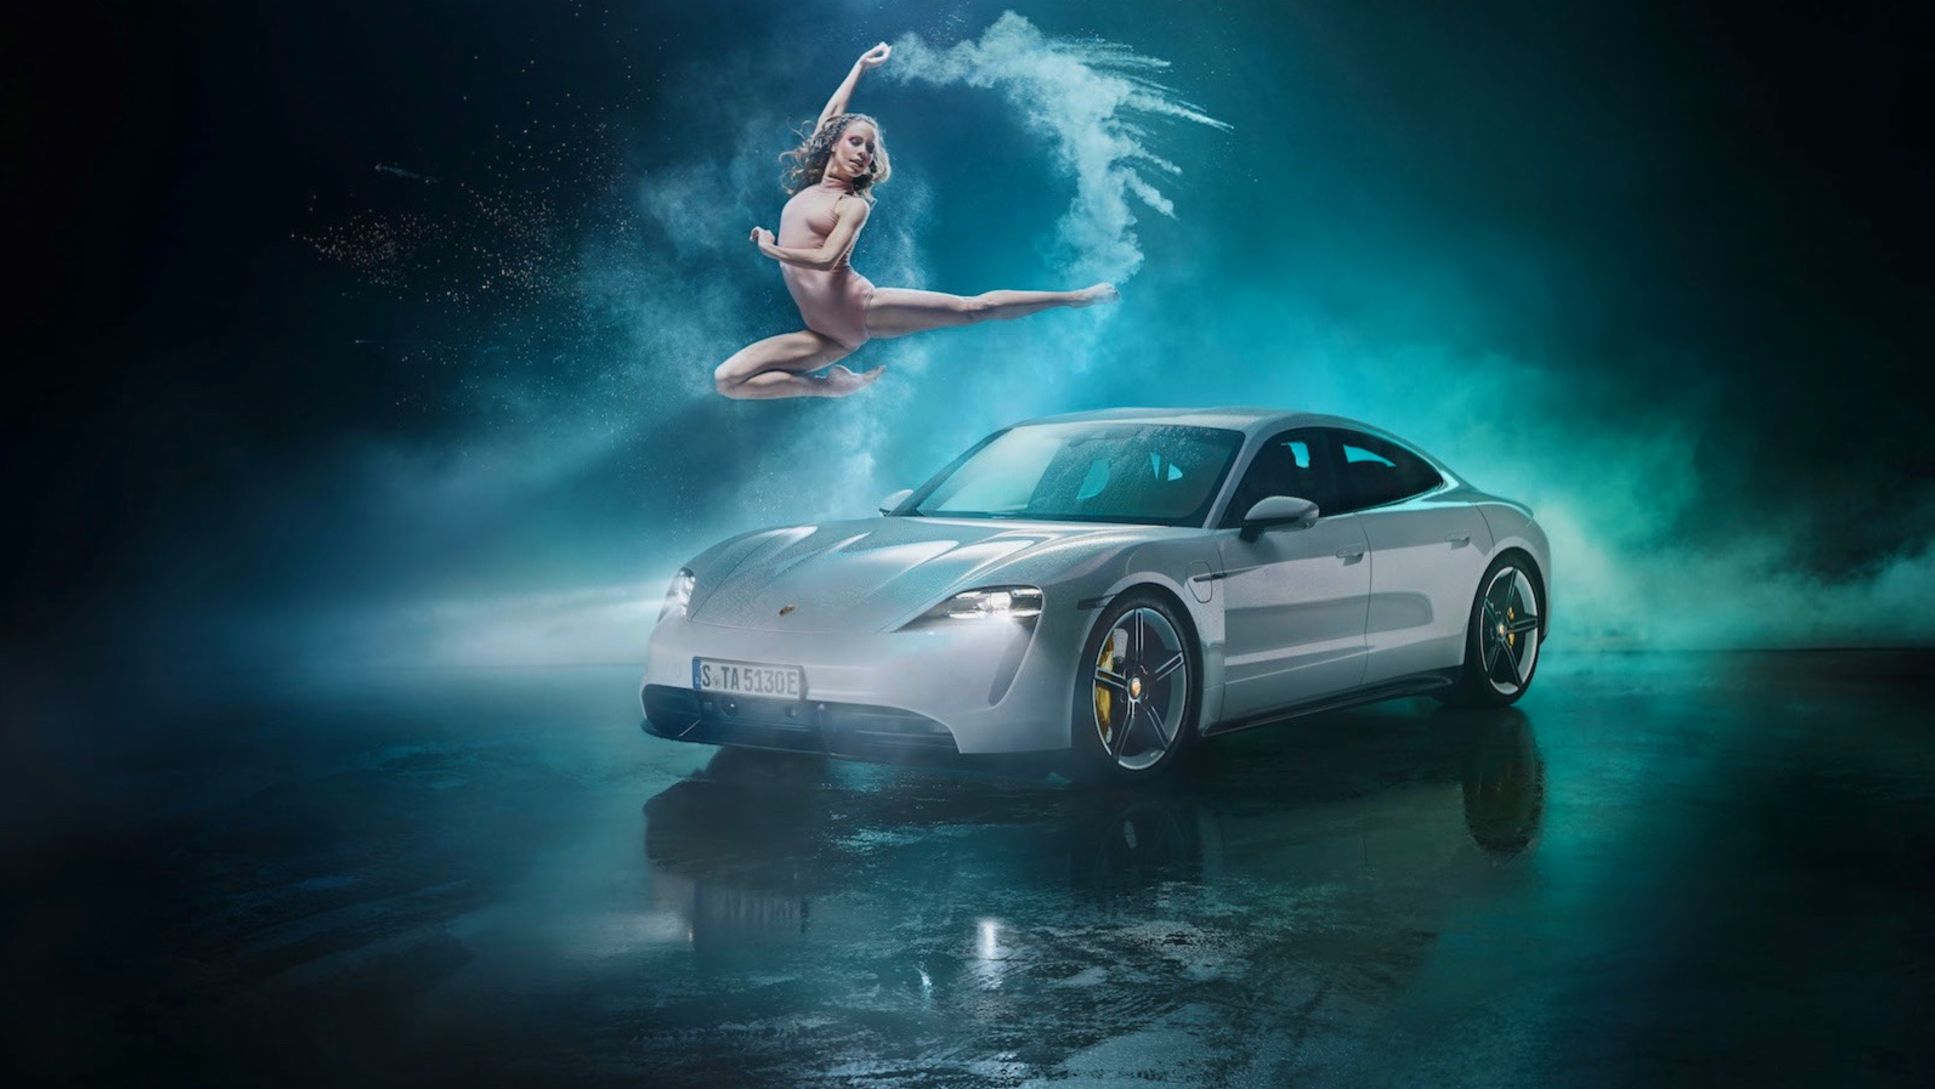 Taycan Turbo S, Anzeigenmotiv „Ballett am Kulturwasen“, 2020, Porsche AG